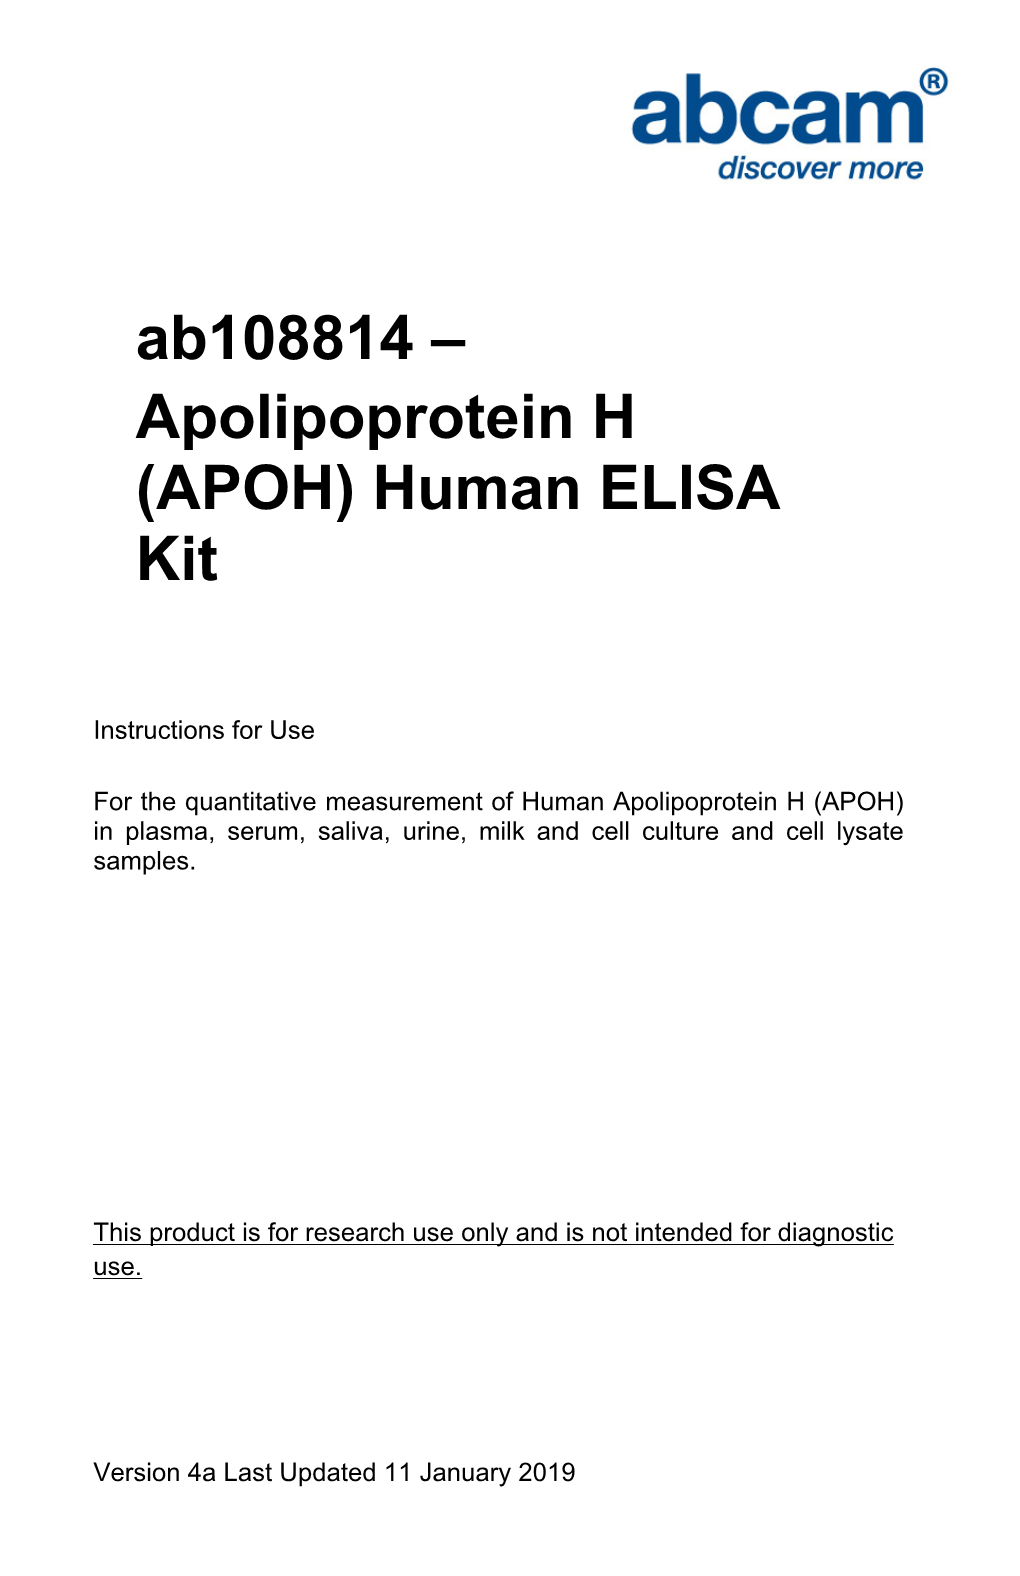 Apolipoprotein H (APOH) Human ELISA Kit